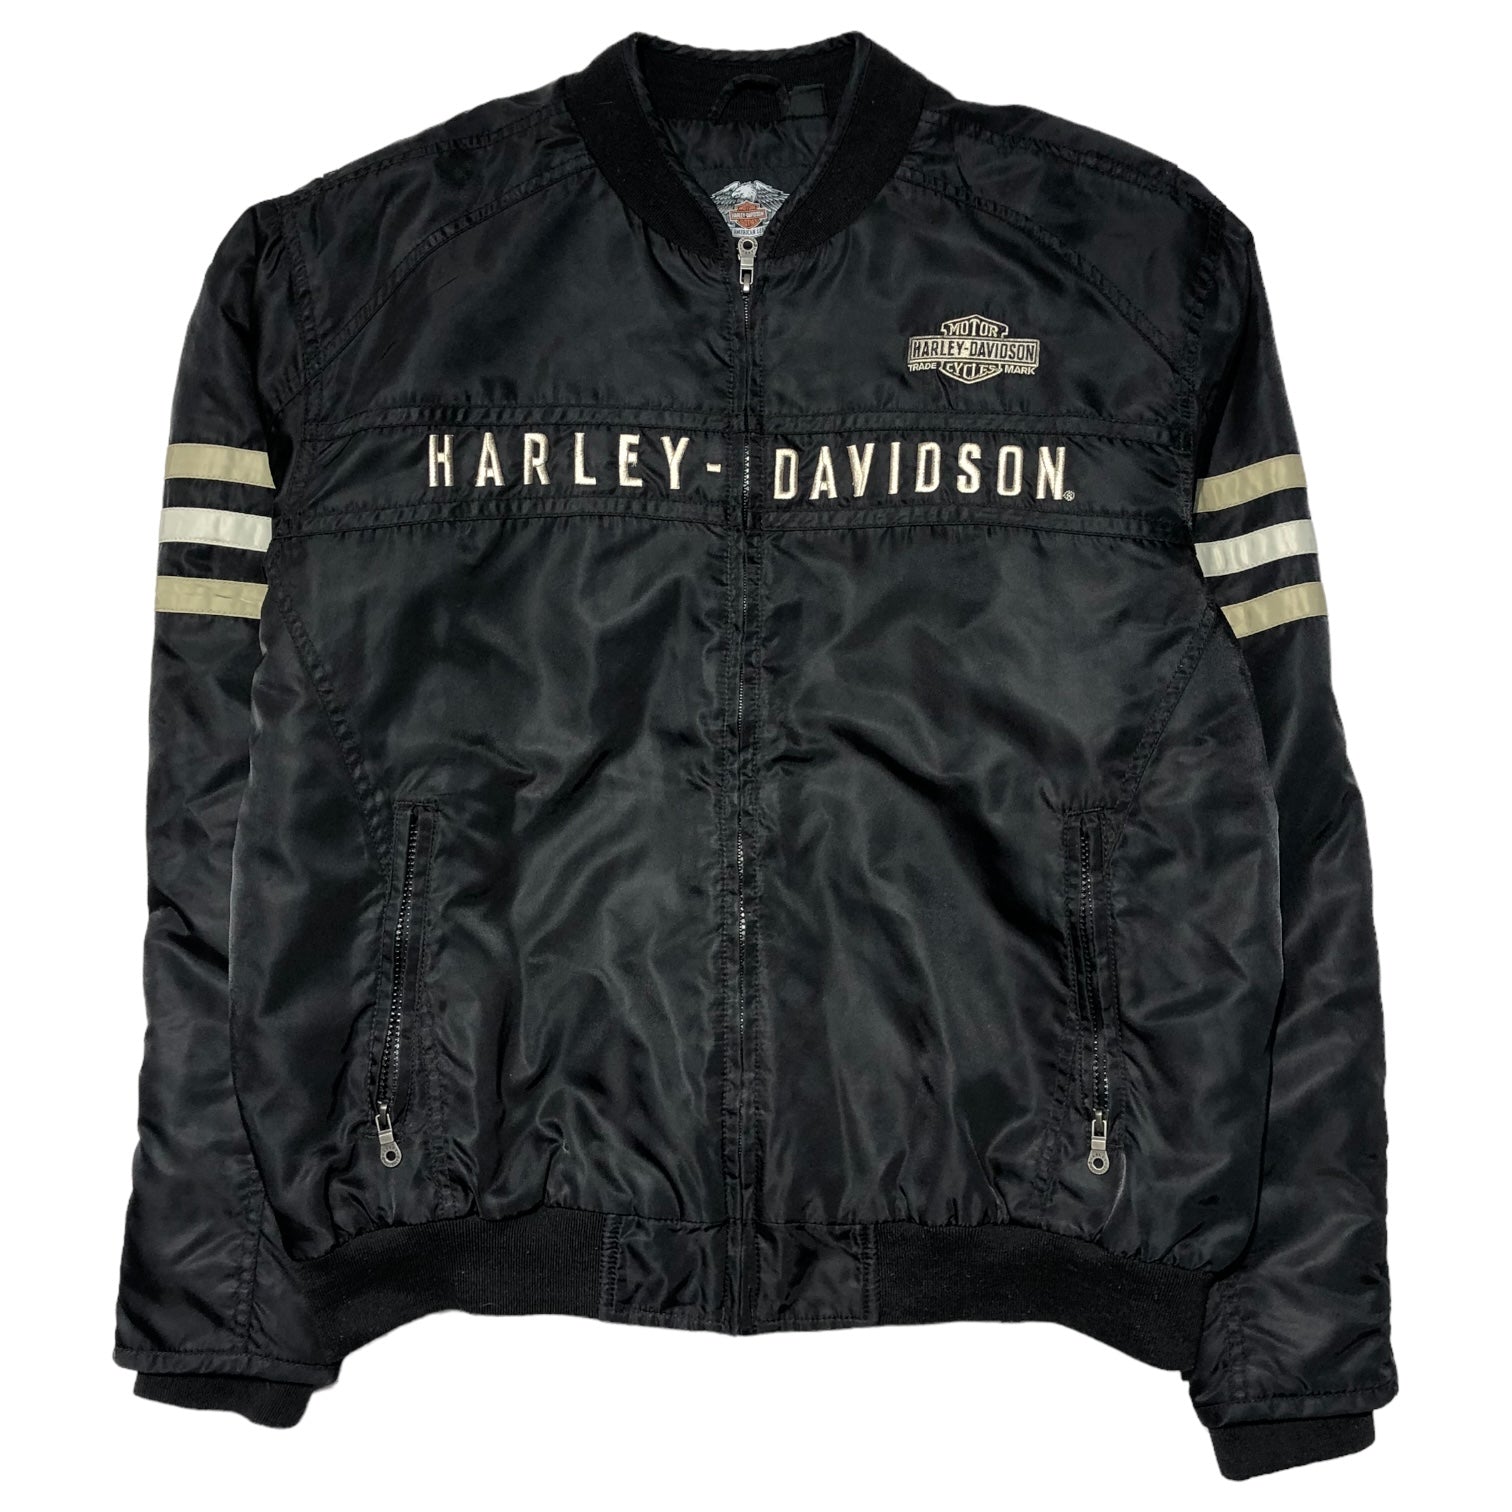 HARLEY DAVIDSON(ハーレーダヴィッドソン) Heritage Nylon Bomber Jacket ヘリテージ ナイロン ボンバー ジャケット 98552-15VM L ブラック×ホワイト レーシング ライダース バイカー